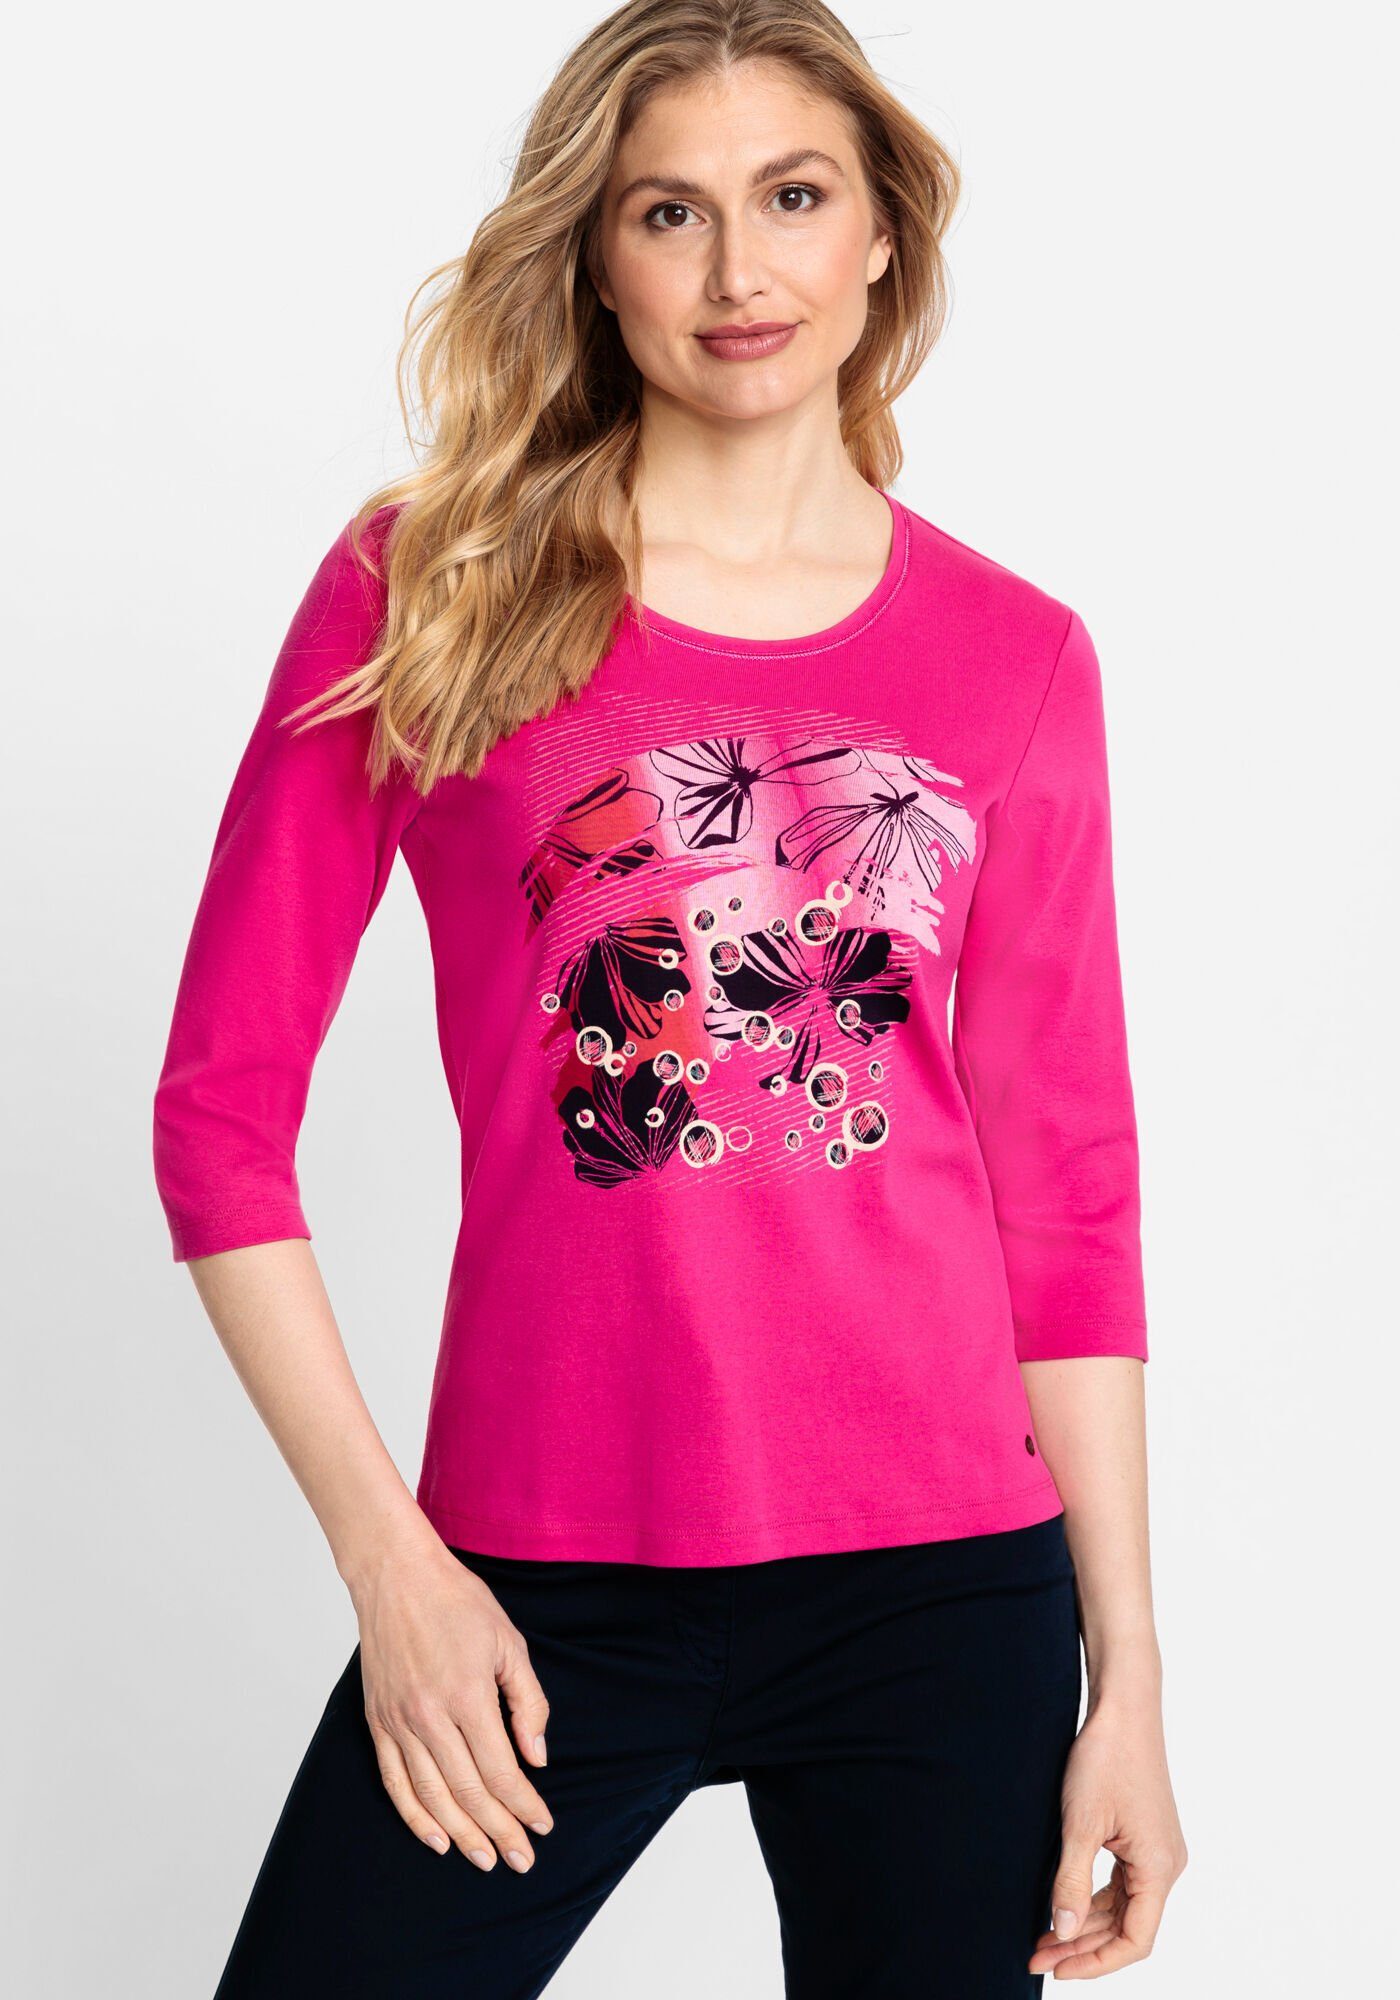 Olsen Rundhalsshirt mit phantasievollen Placement-Print Vivid Pink